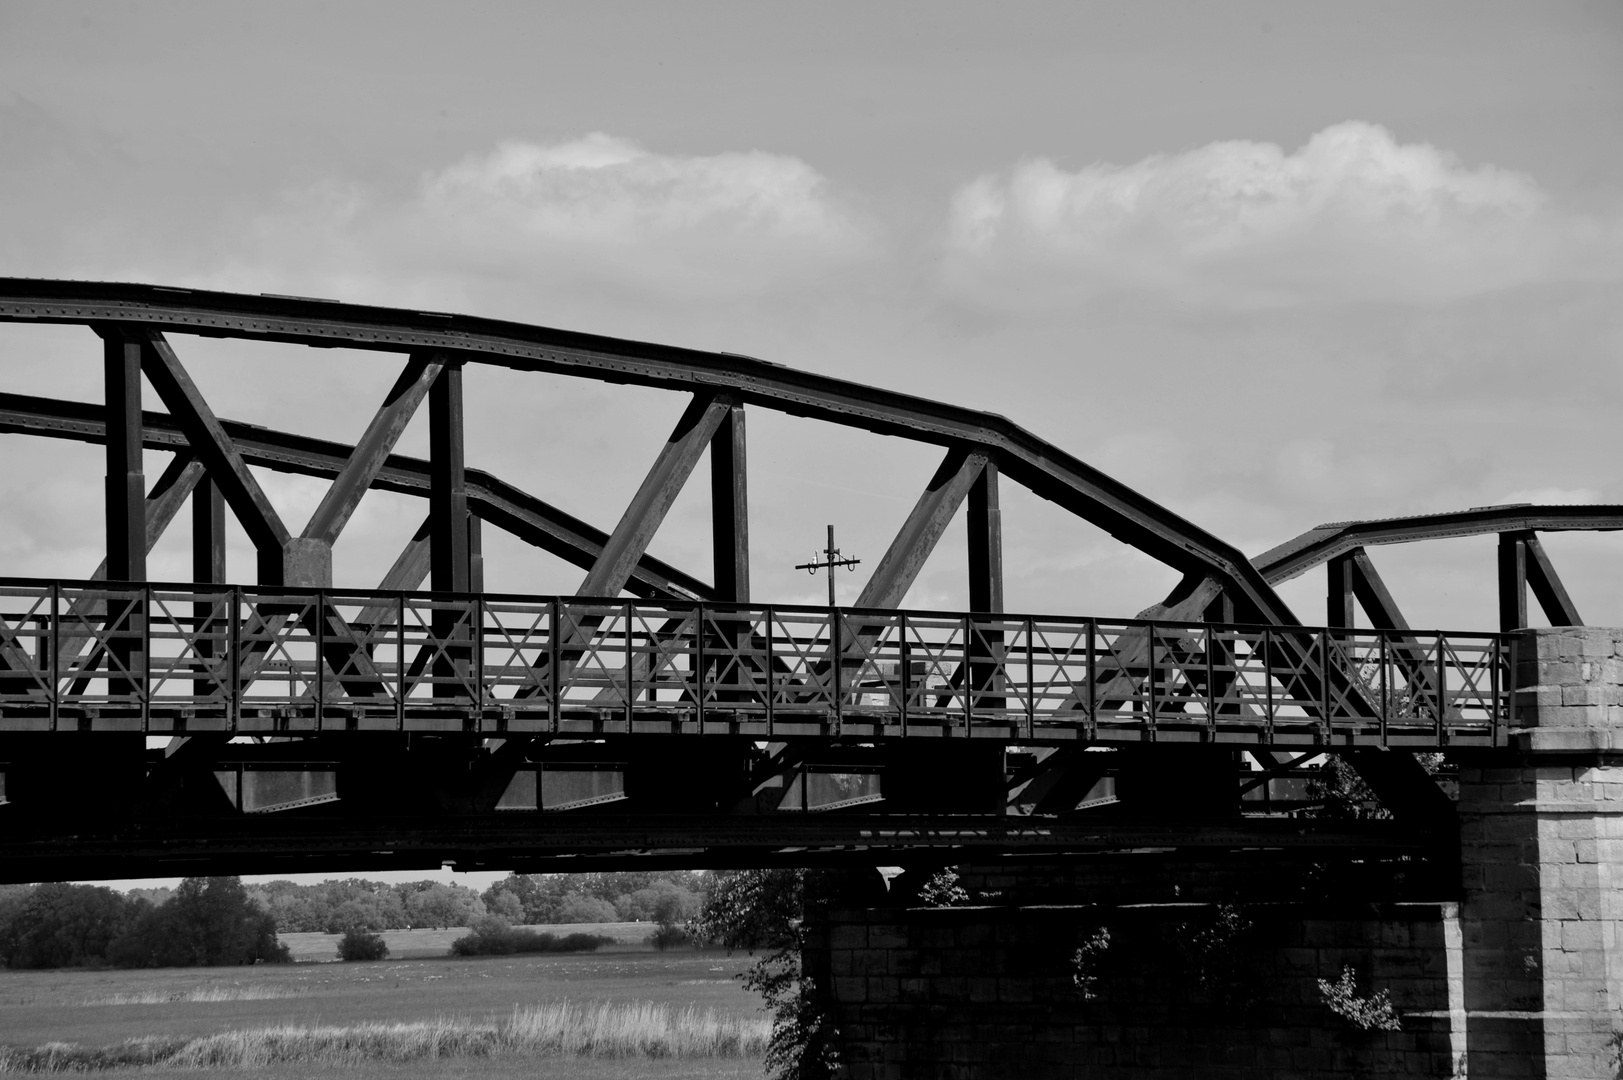 Eisenbahnbrücke Dömitz/Elbe VII